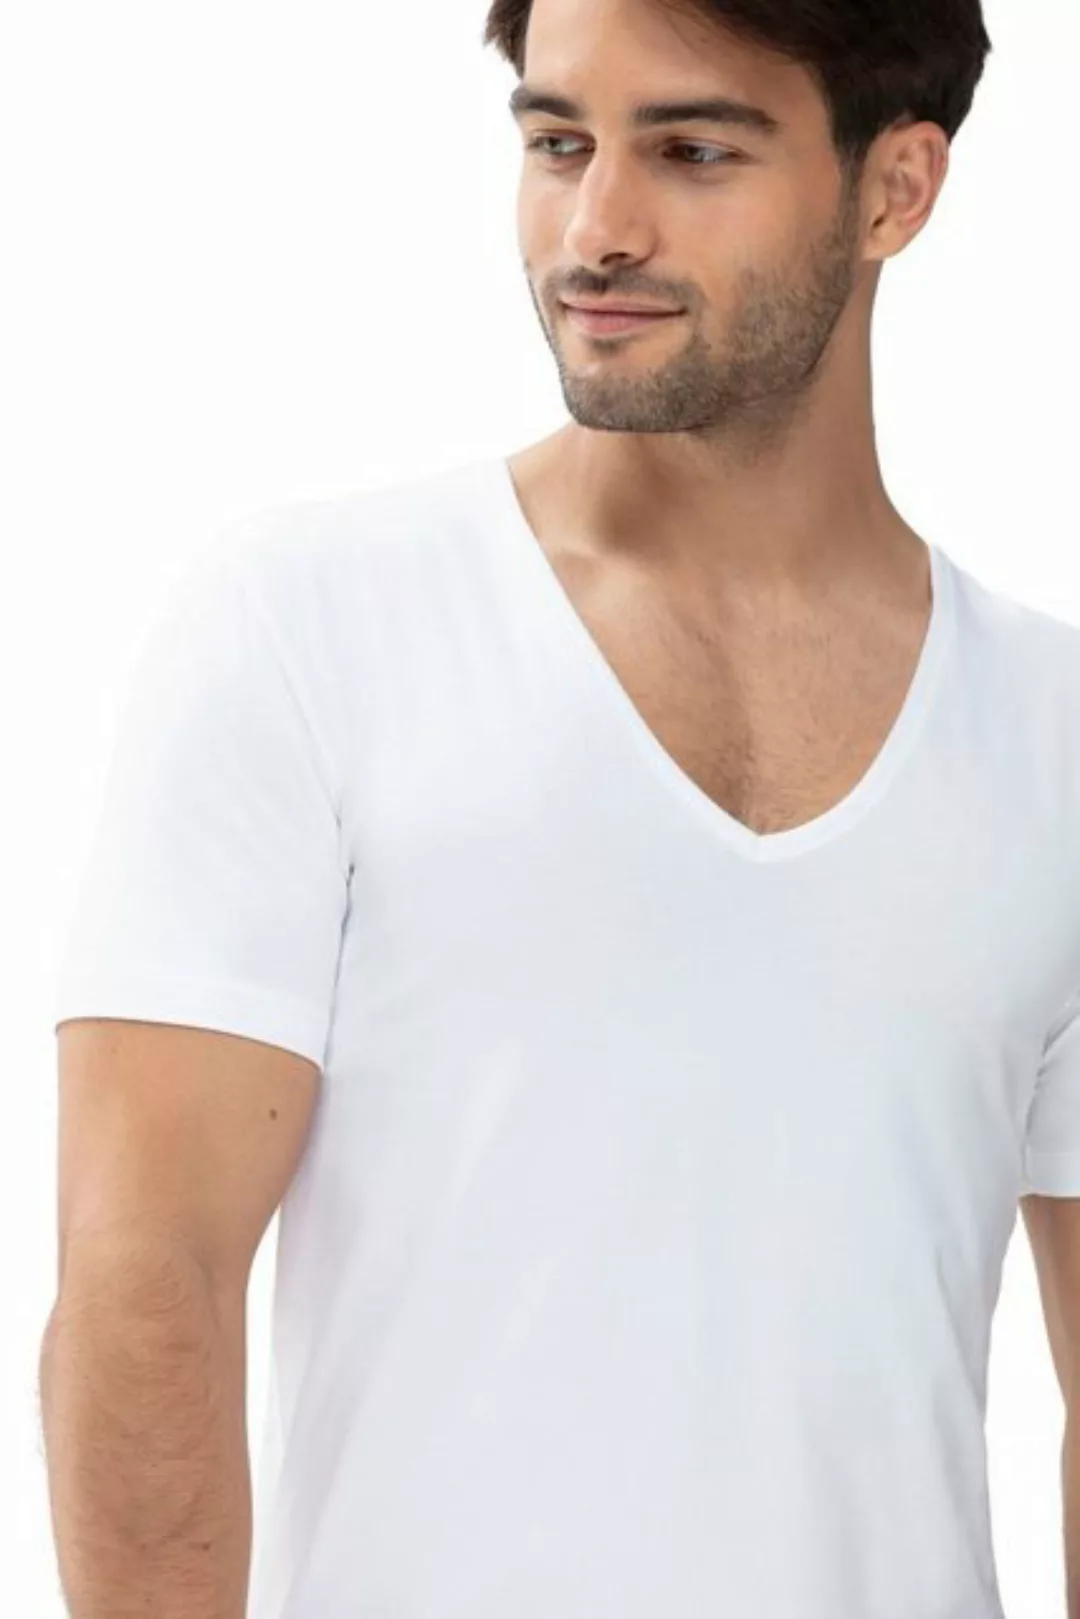 Mey Elastisches T-Shirt in Coolmax®-Qualität günstig online kaufen